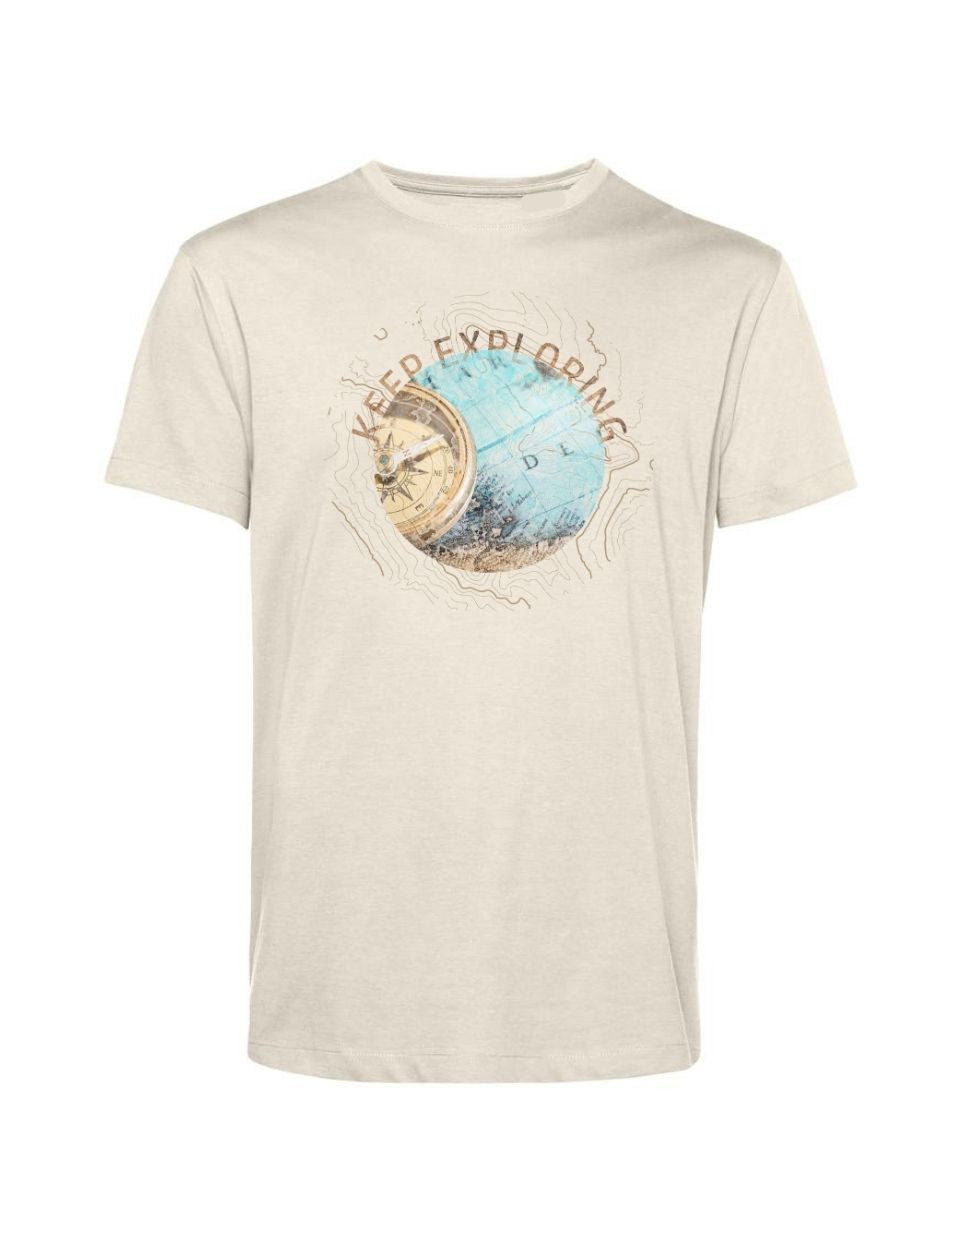 Keep Exploring T-Shirt